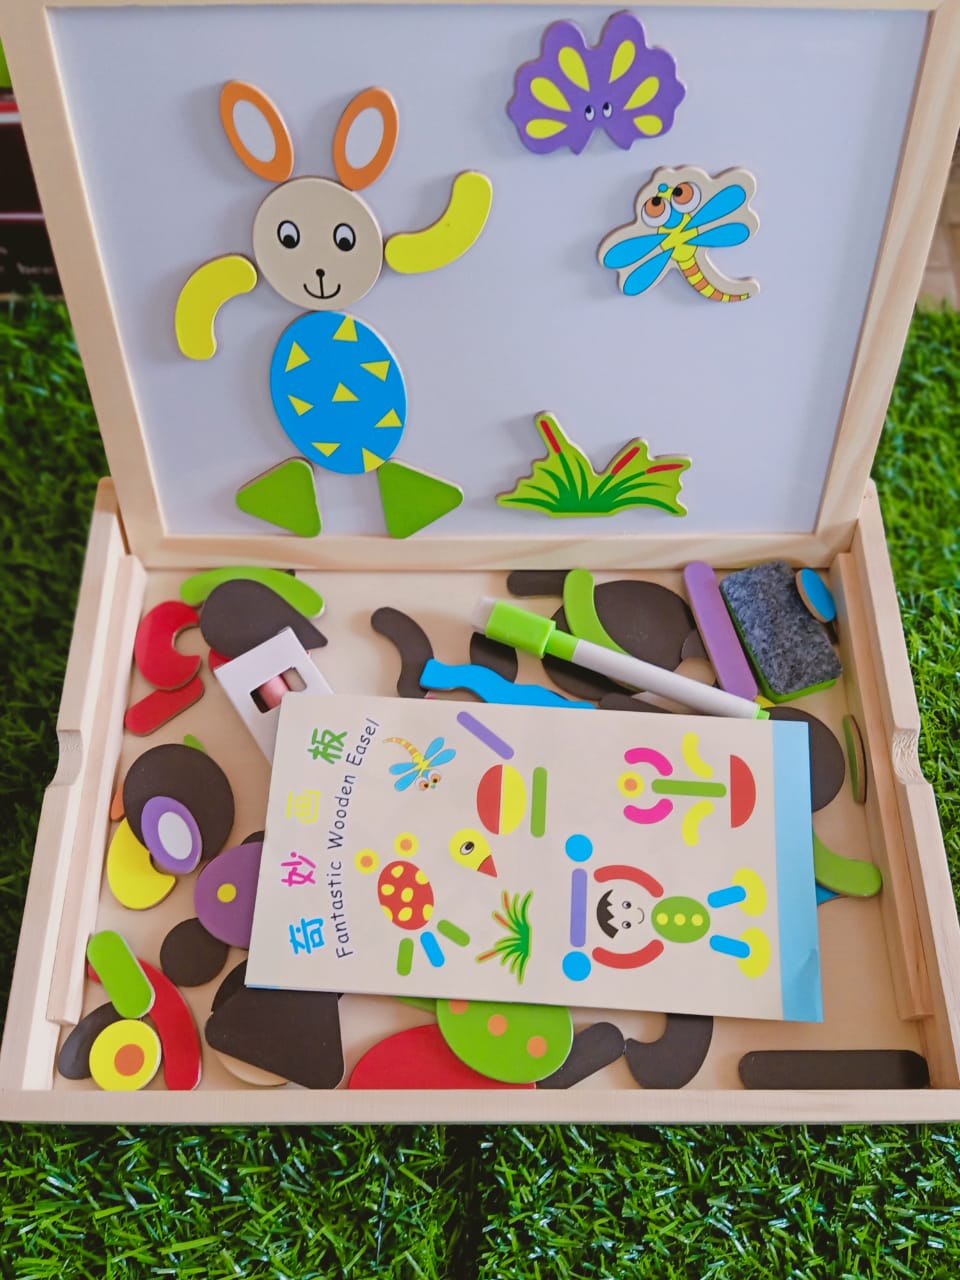 Fantastic Wooden Easel Toys for Kids-SHTM1134